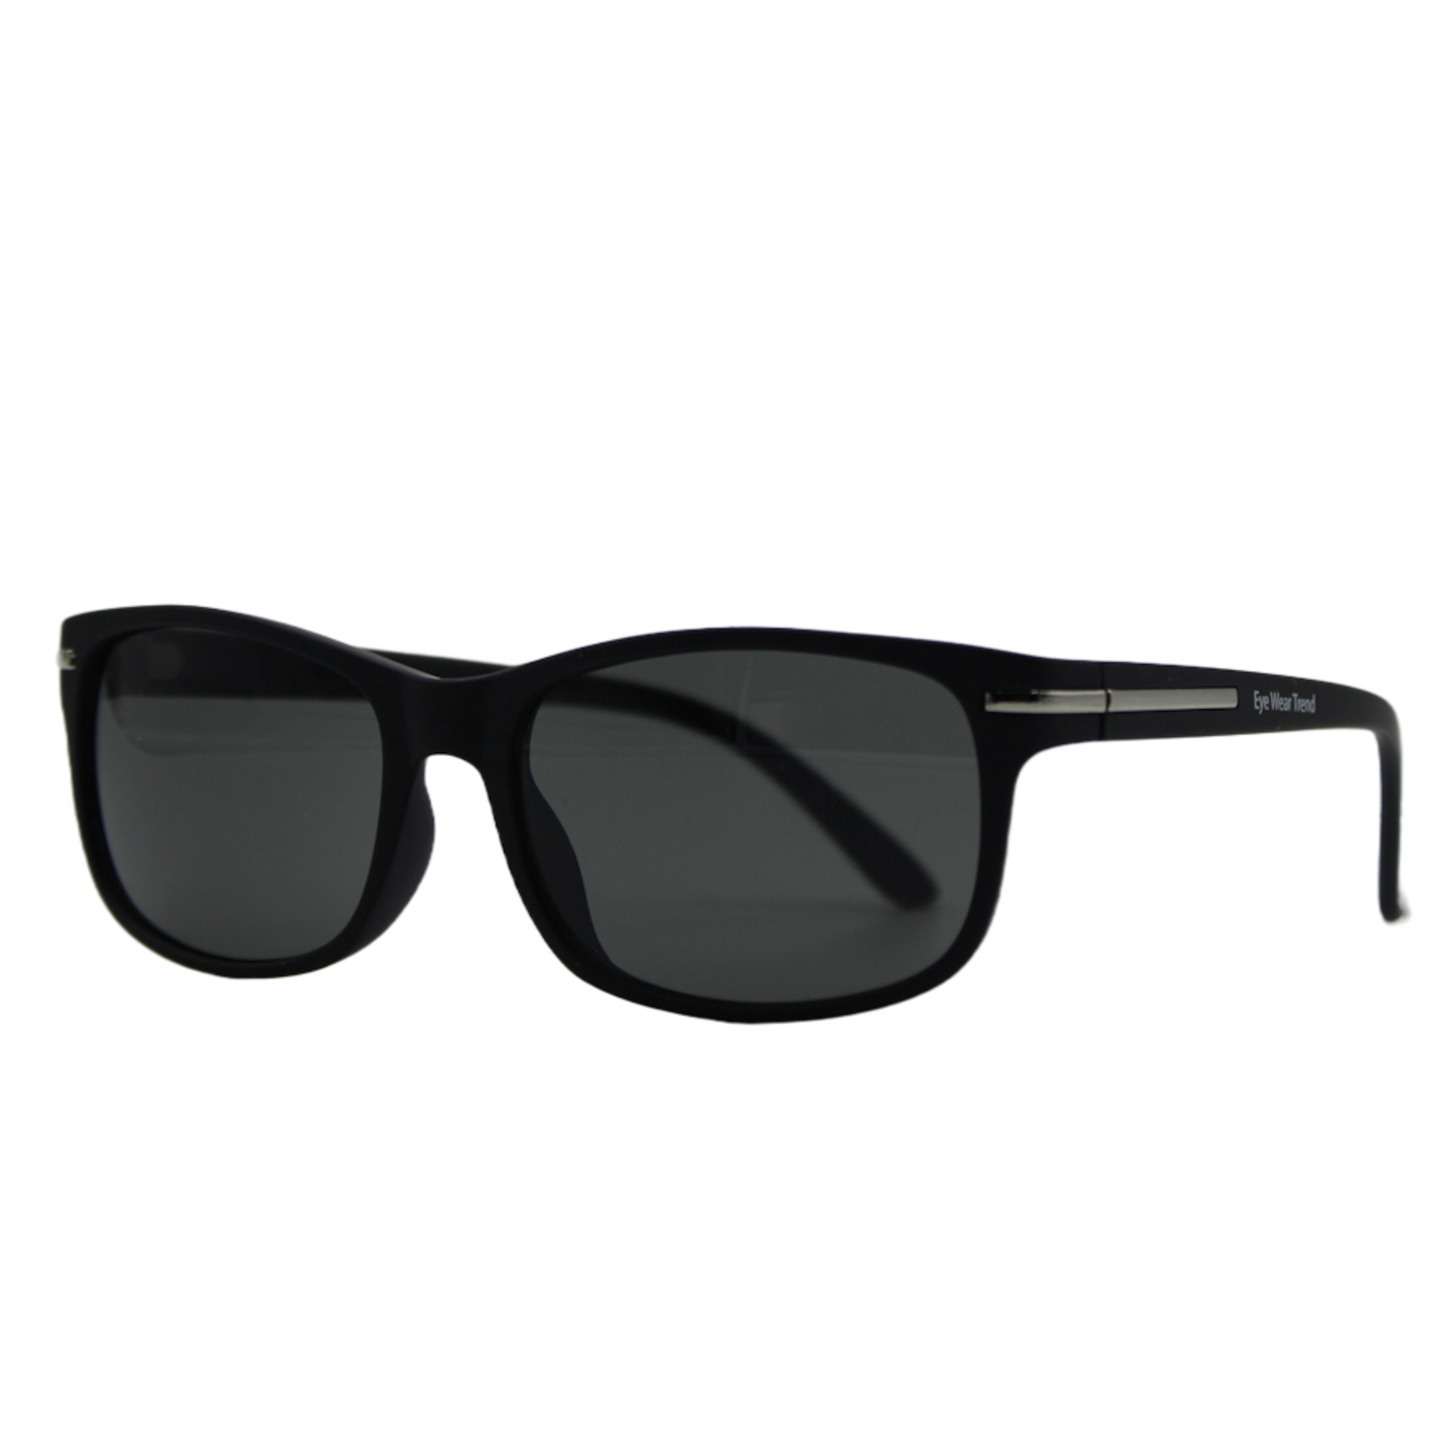 Black Full Rim Wayfarer-sunglass ,Brand Eye Wear Trend